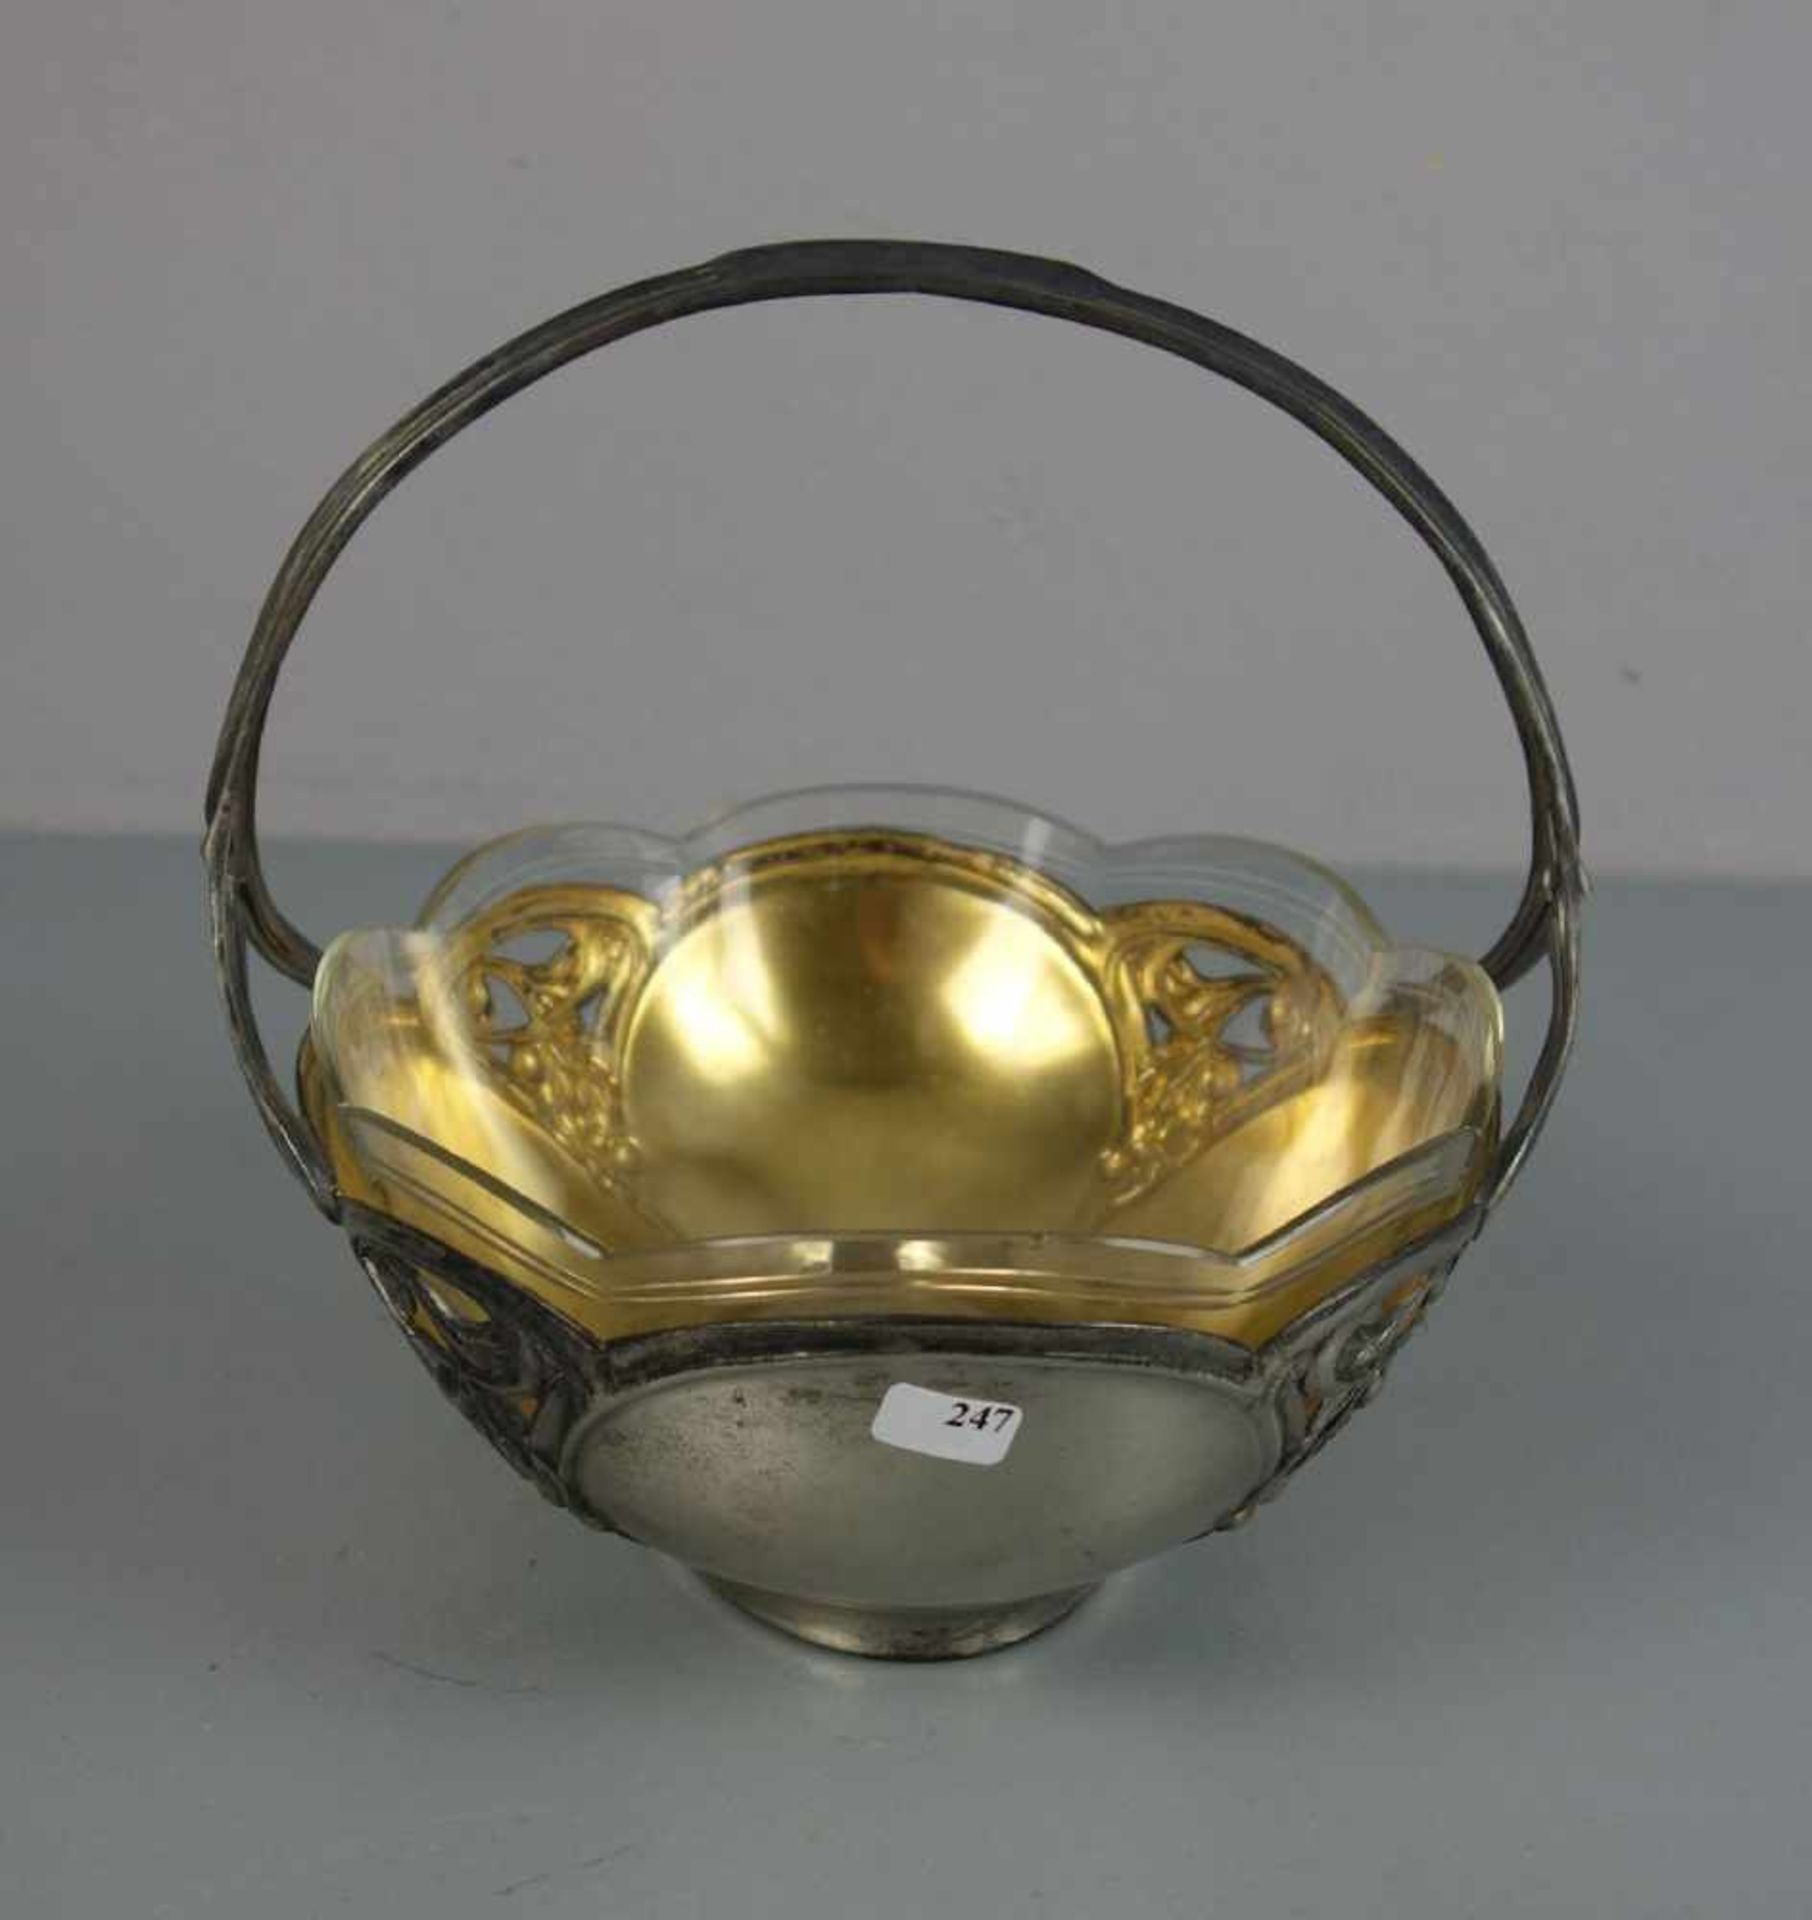 JUGENDSTIL HENKELSCHALE / OBSTSCHALE / art nouveau bowl, um 1900, Metall und Glas, ungemarkt. - Bild 2 aus 4